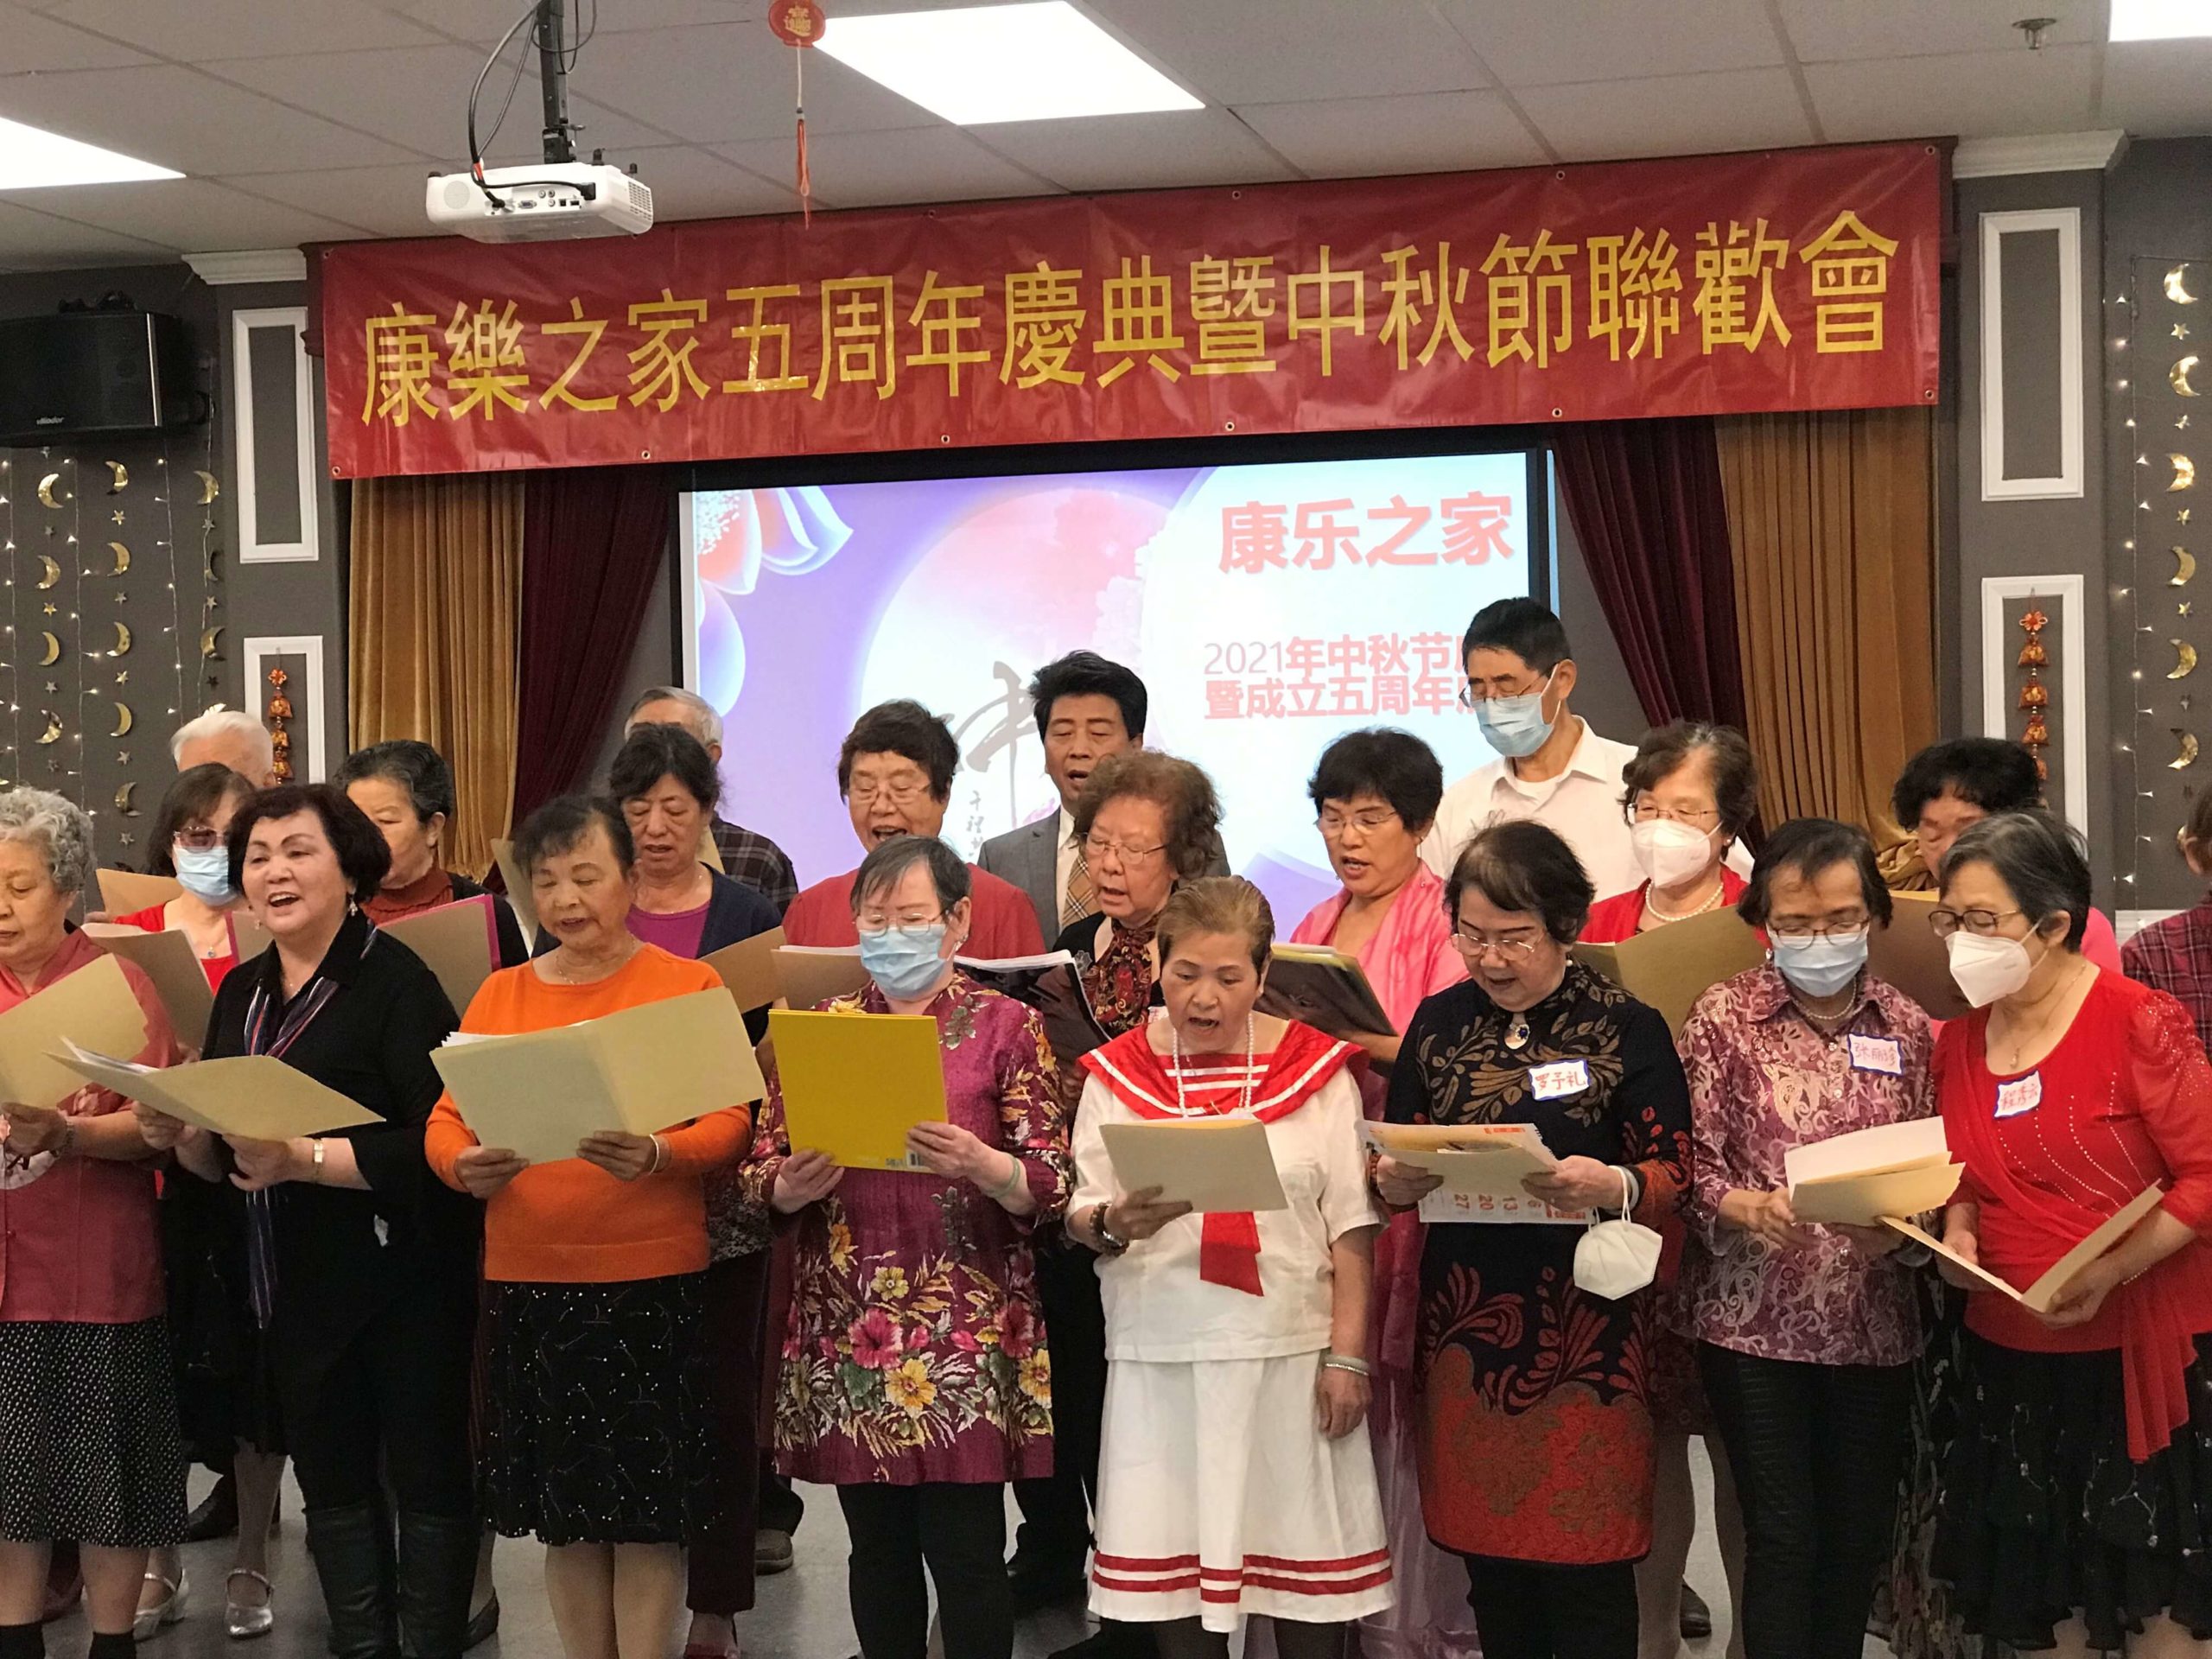 “康乐之家”喜庆创办五周年暨中秋佳节 百余名老年人会员用歌舞抒发康乐之歌